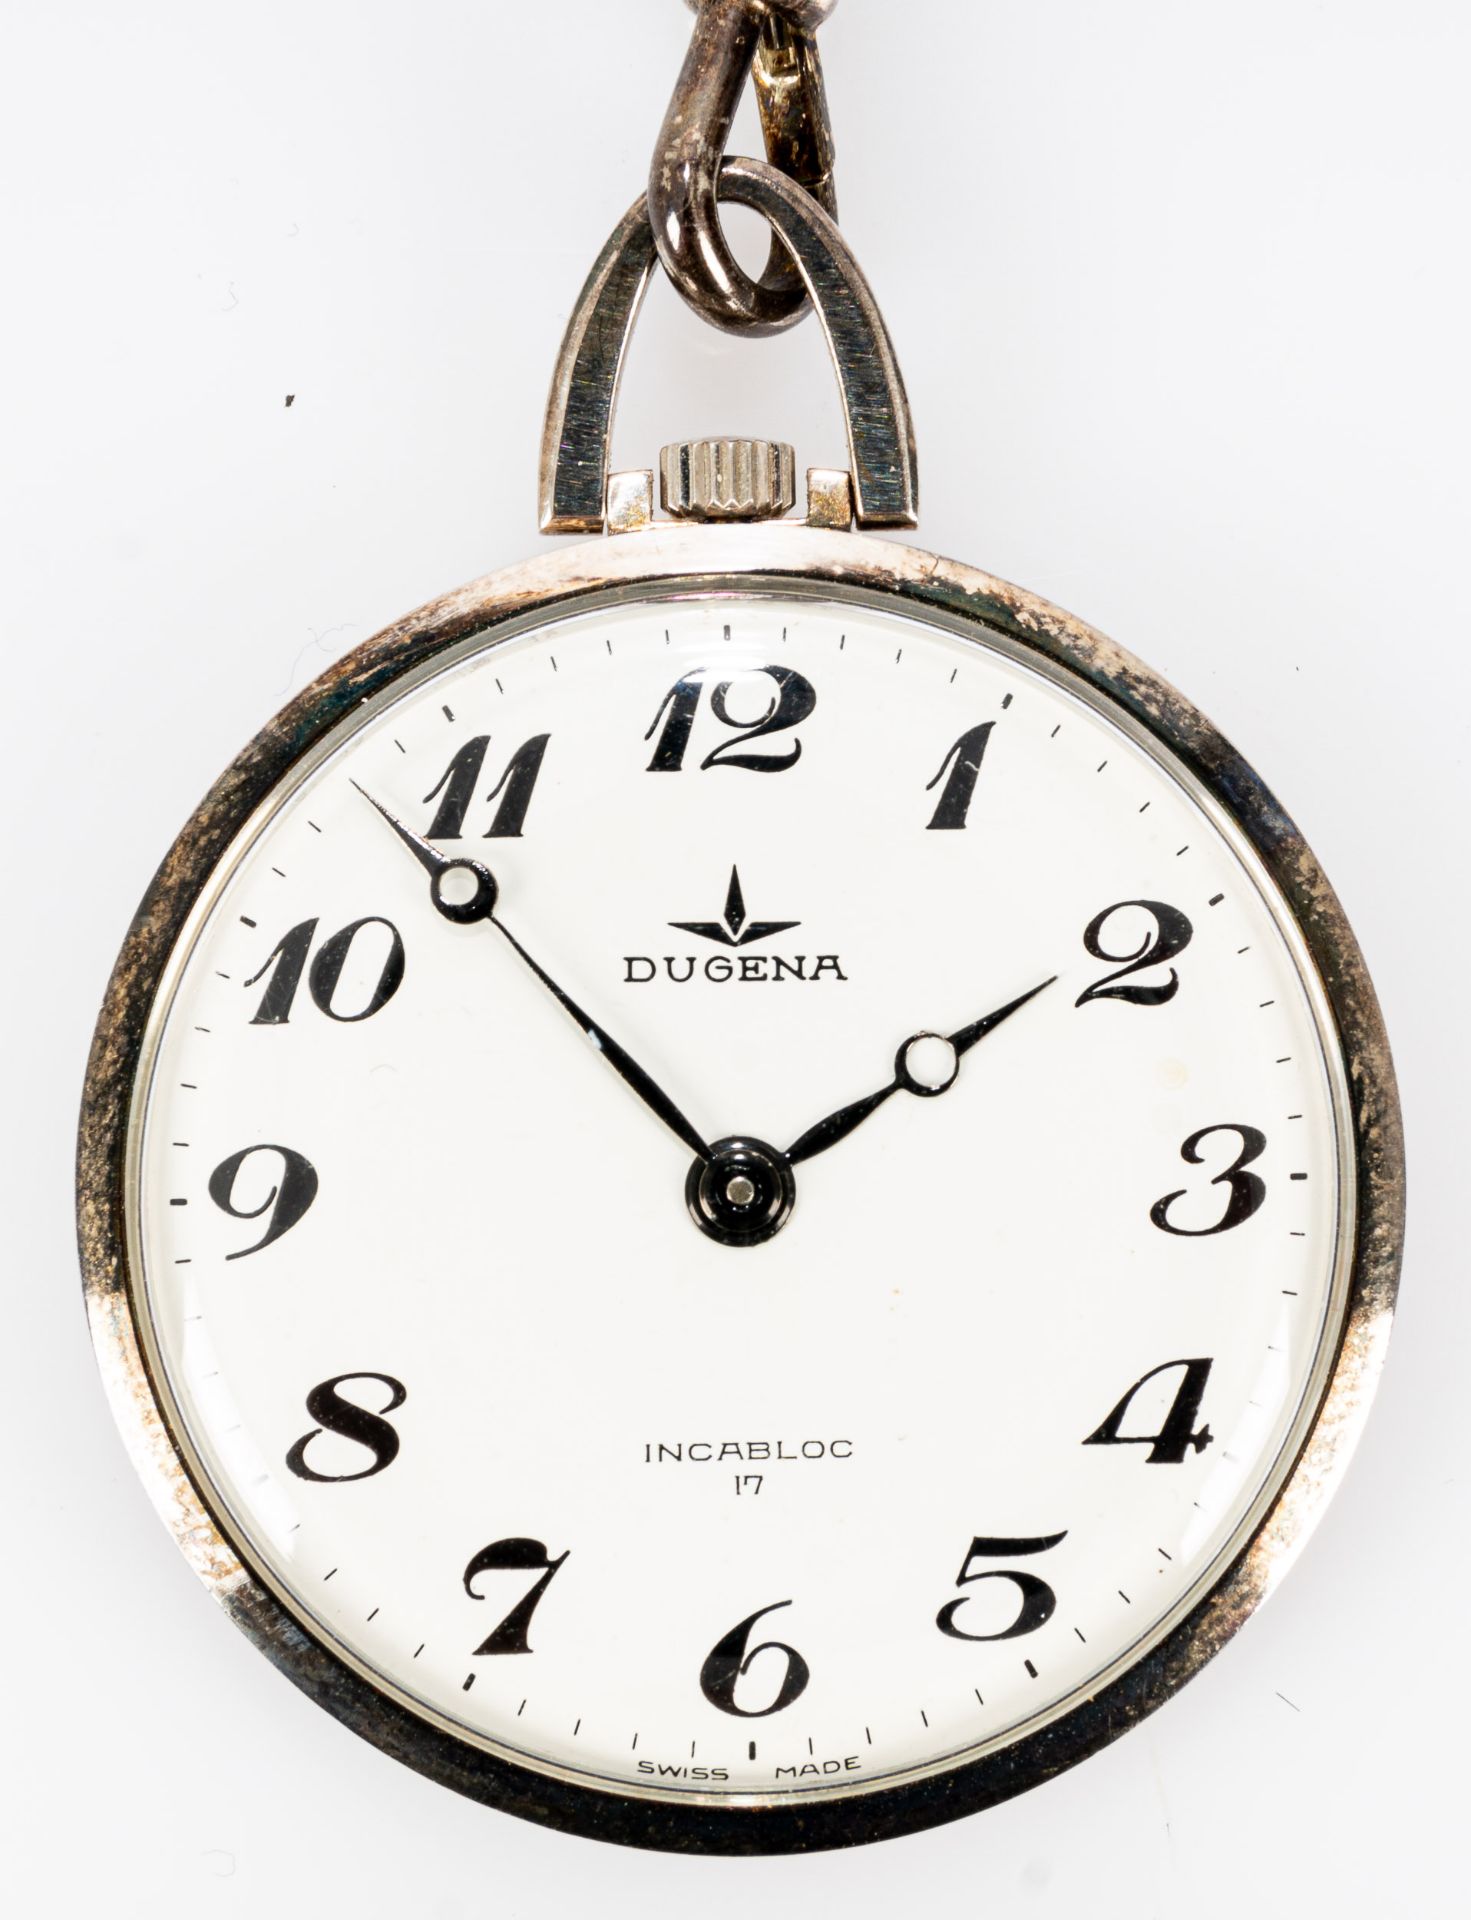 DUGENA-Frackuhr an silberfarbener Gliederkette, ungeprüftes mechanisches Uhrwerk, guter Erhalt, 2.  - Bild 3 aus 4